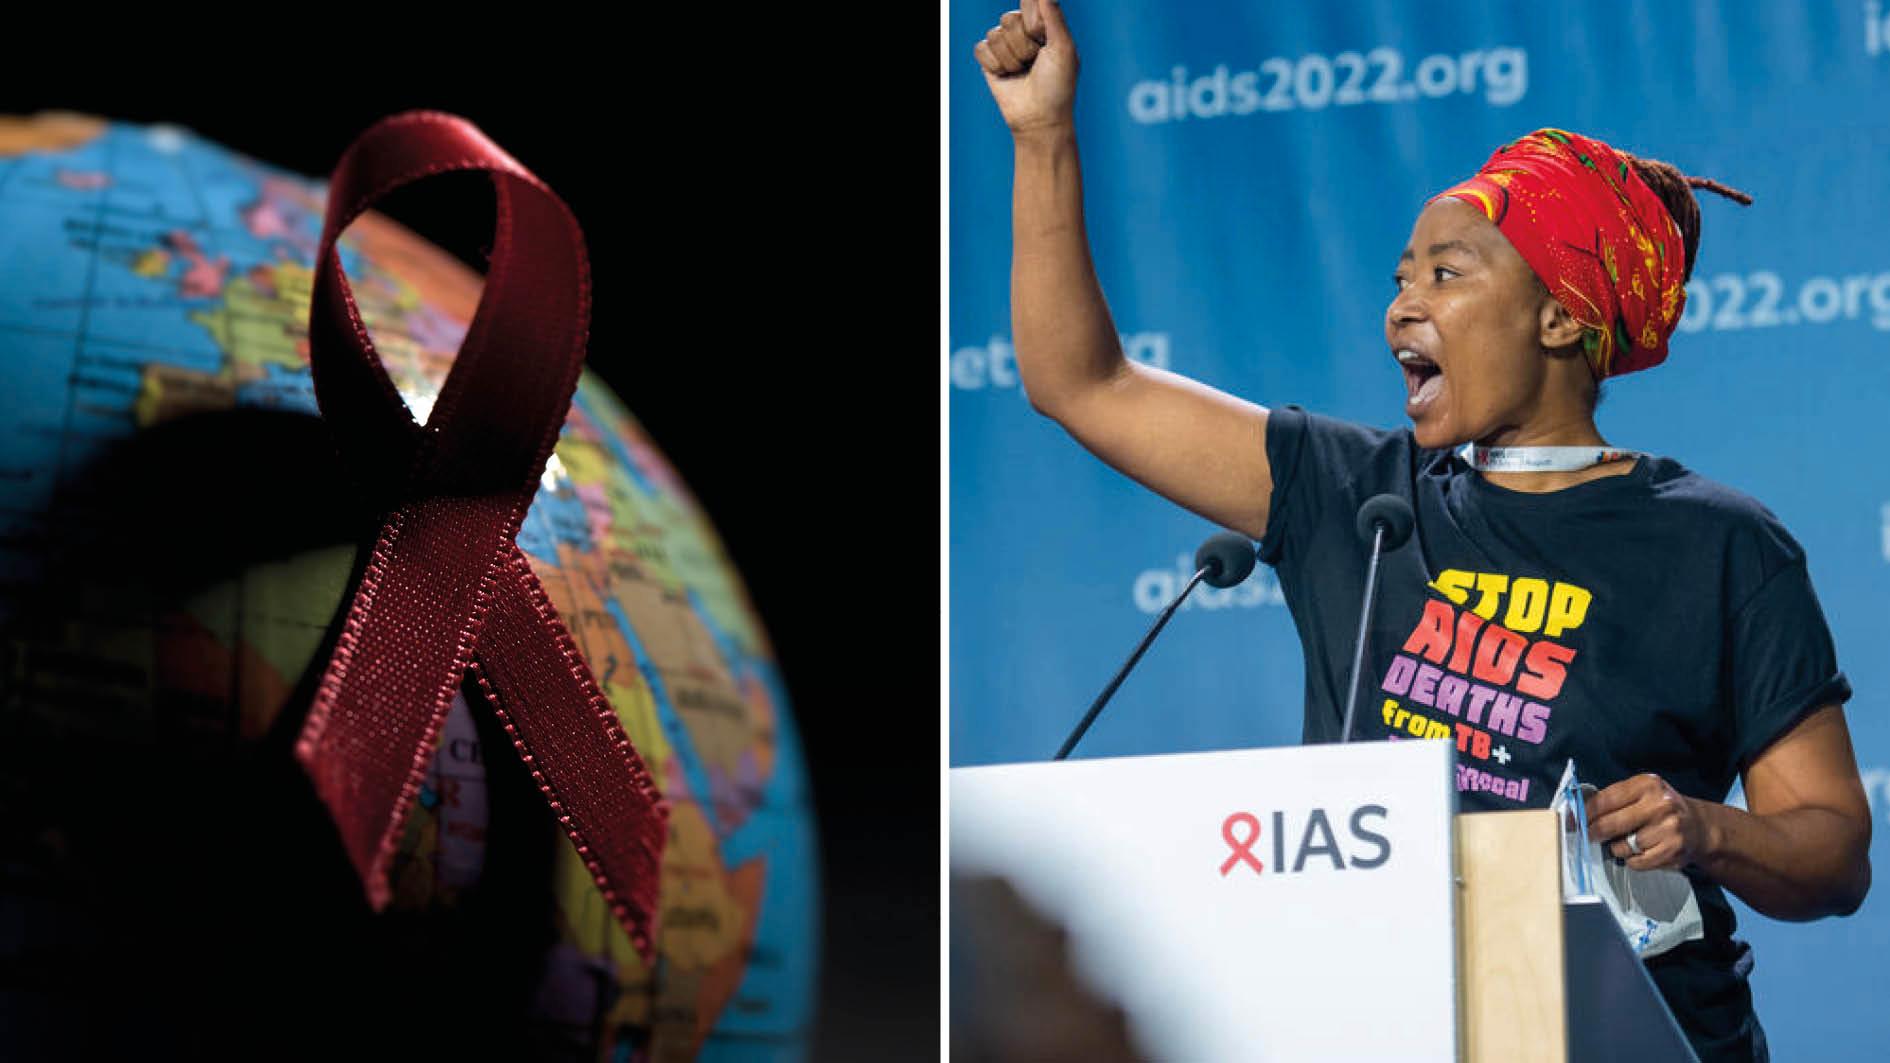 Vi kan utrota aids, men bara om de som själva drabbas av viruset står i centrum för allt vi gör. Det innebär att vi investerar i förebyggande och behandlande program för de grupper som löper störst risk att drabbas, skriver Vuyiseka Dubula.